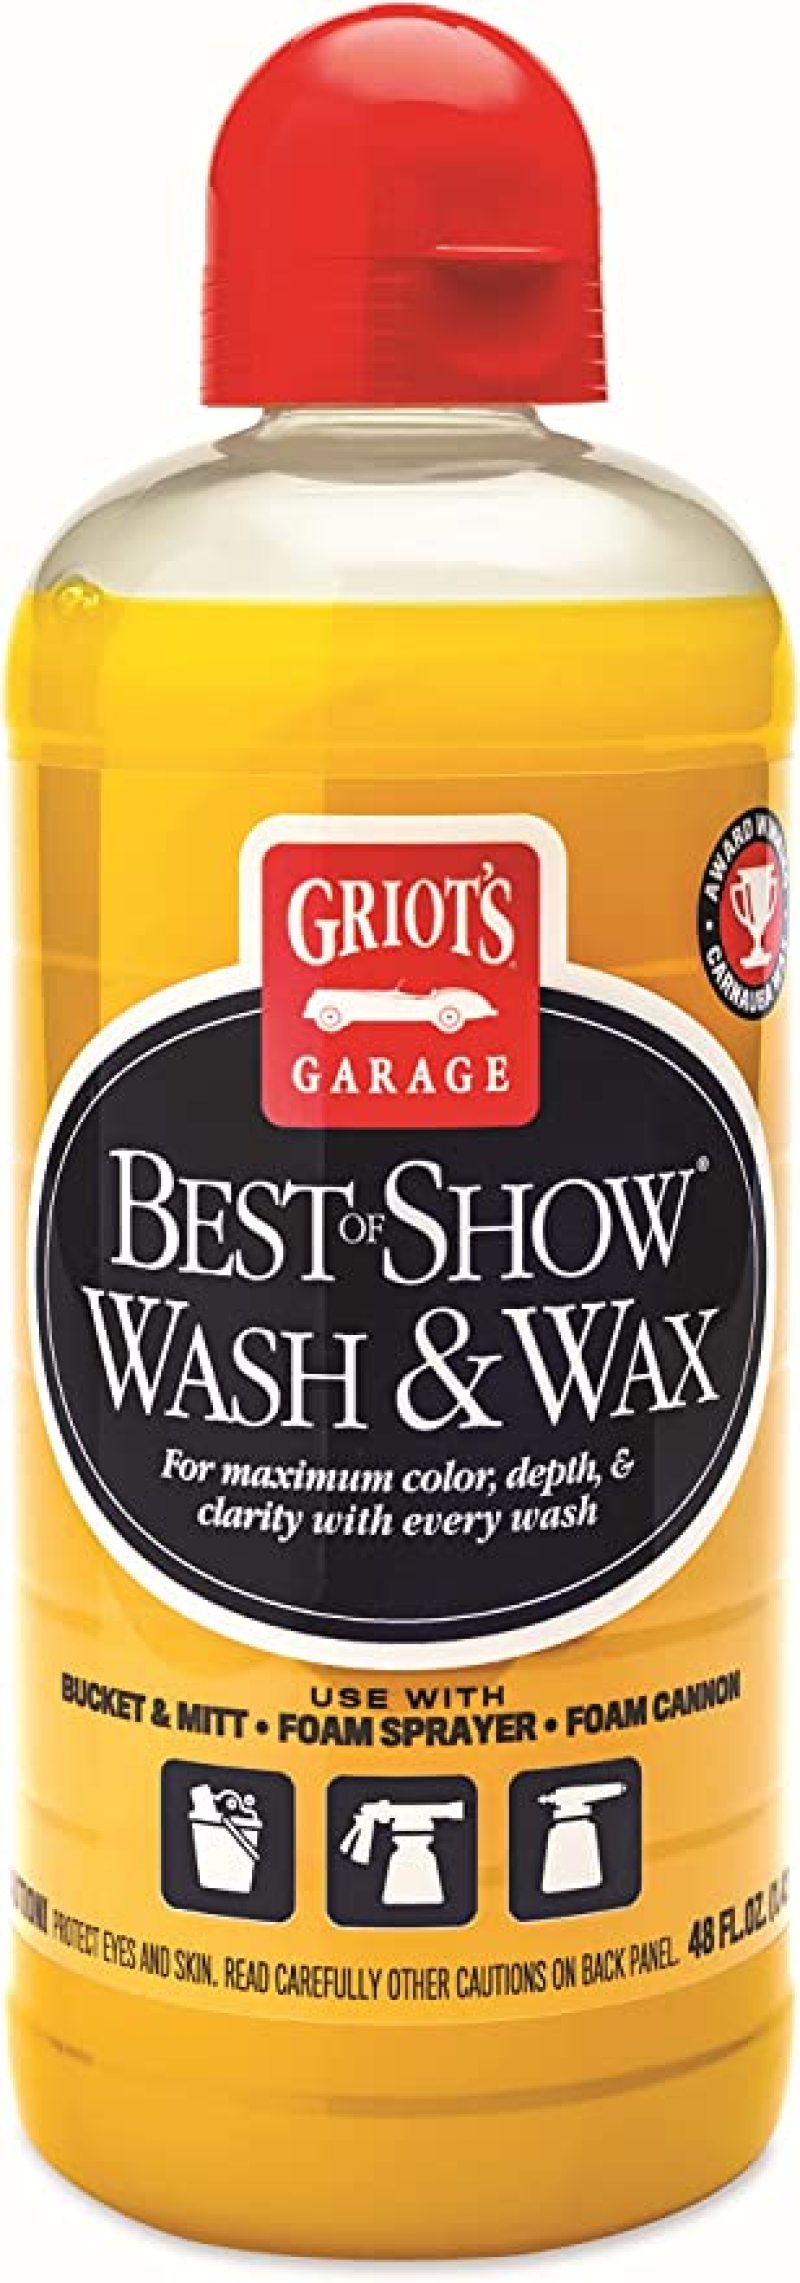 Griots Garage Best of Show Spray Wax - 48oz - Case of 12